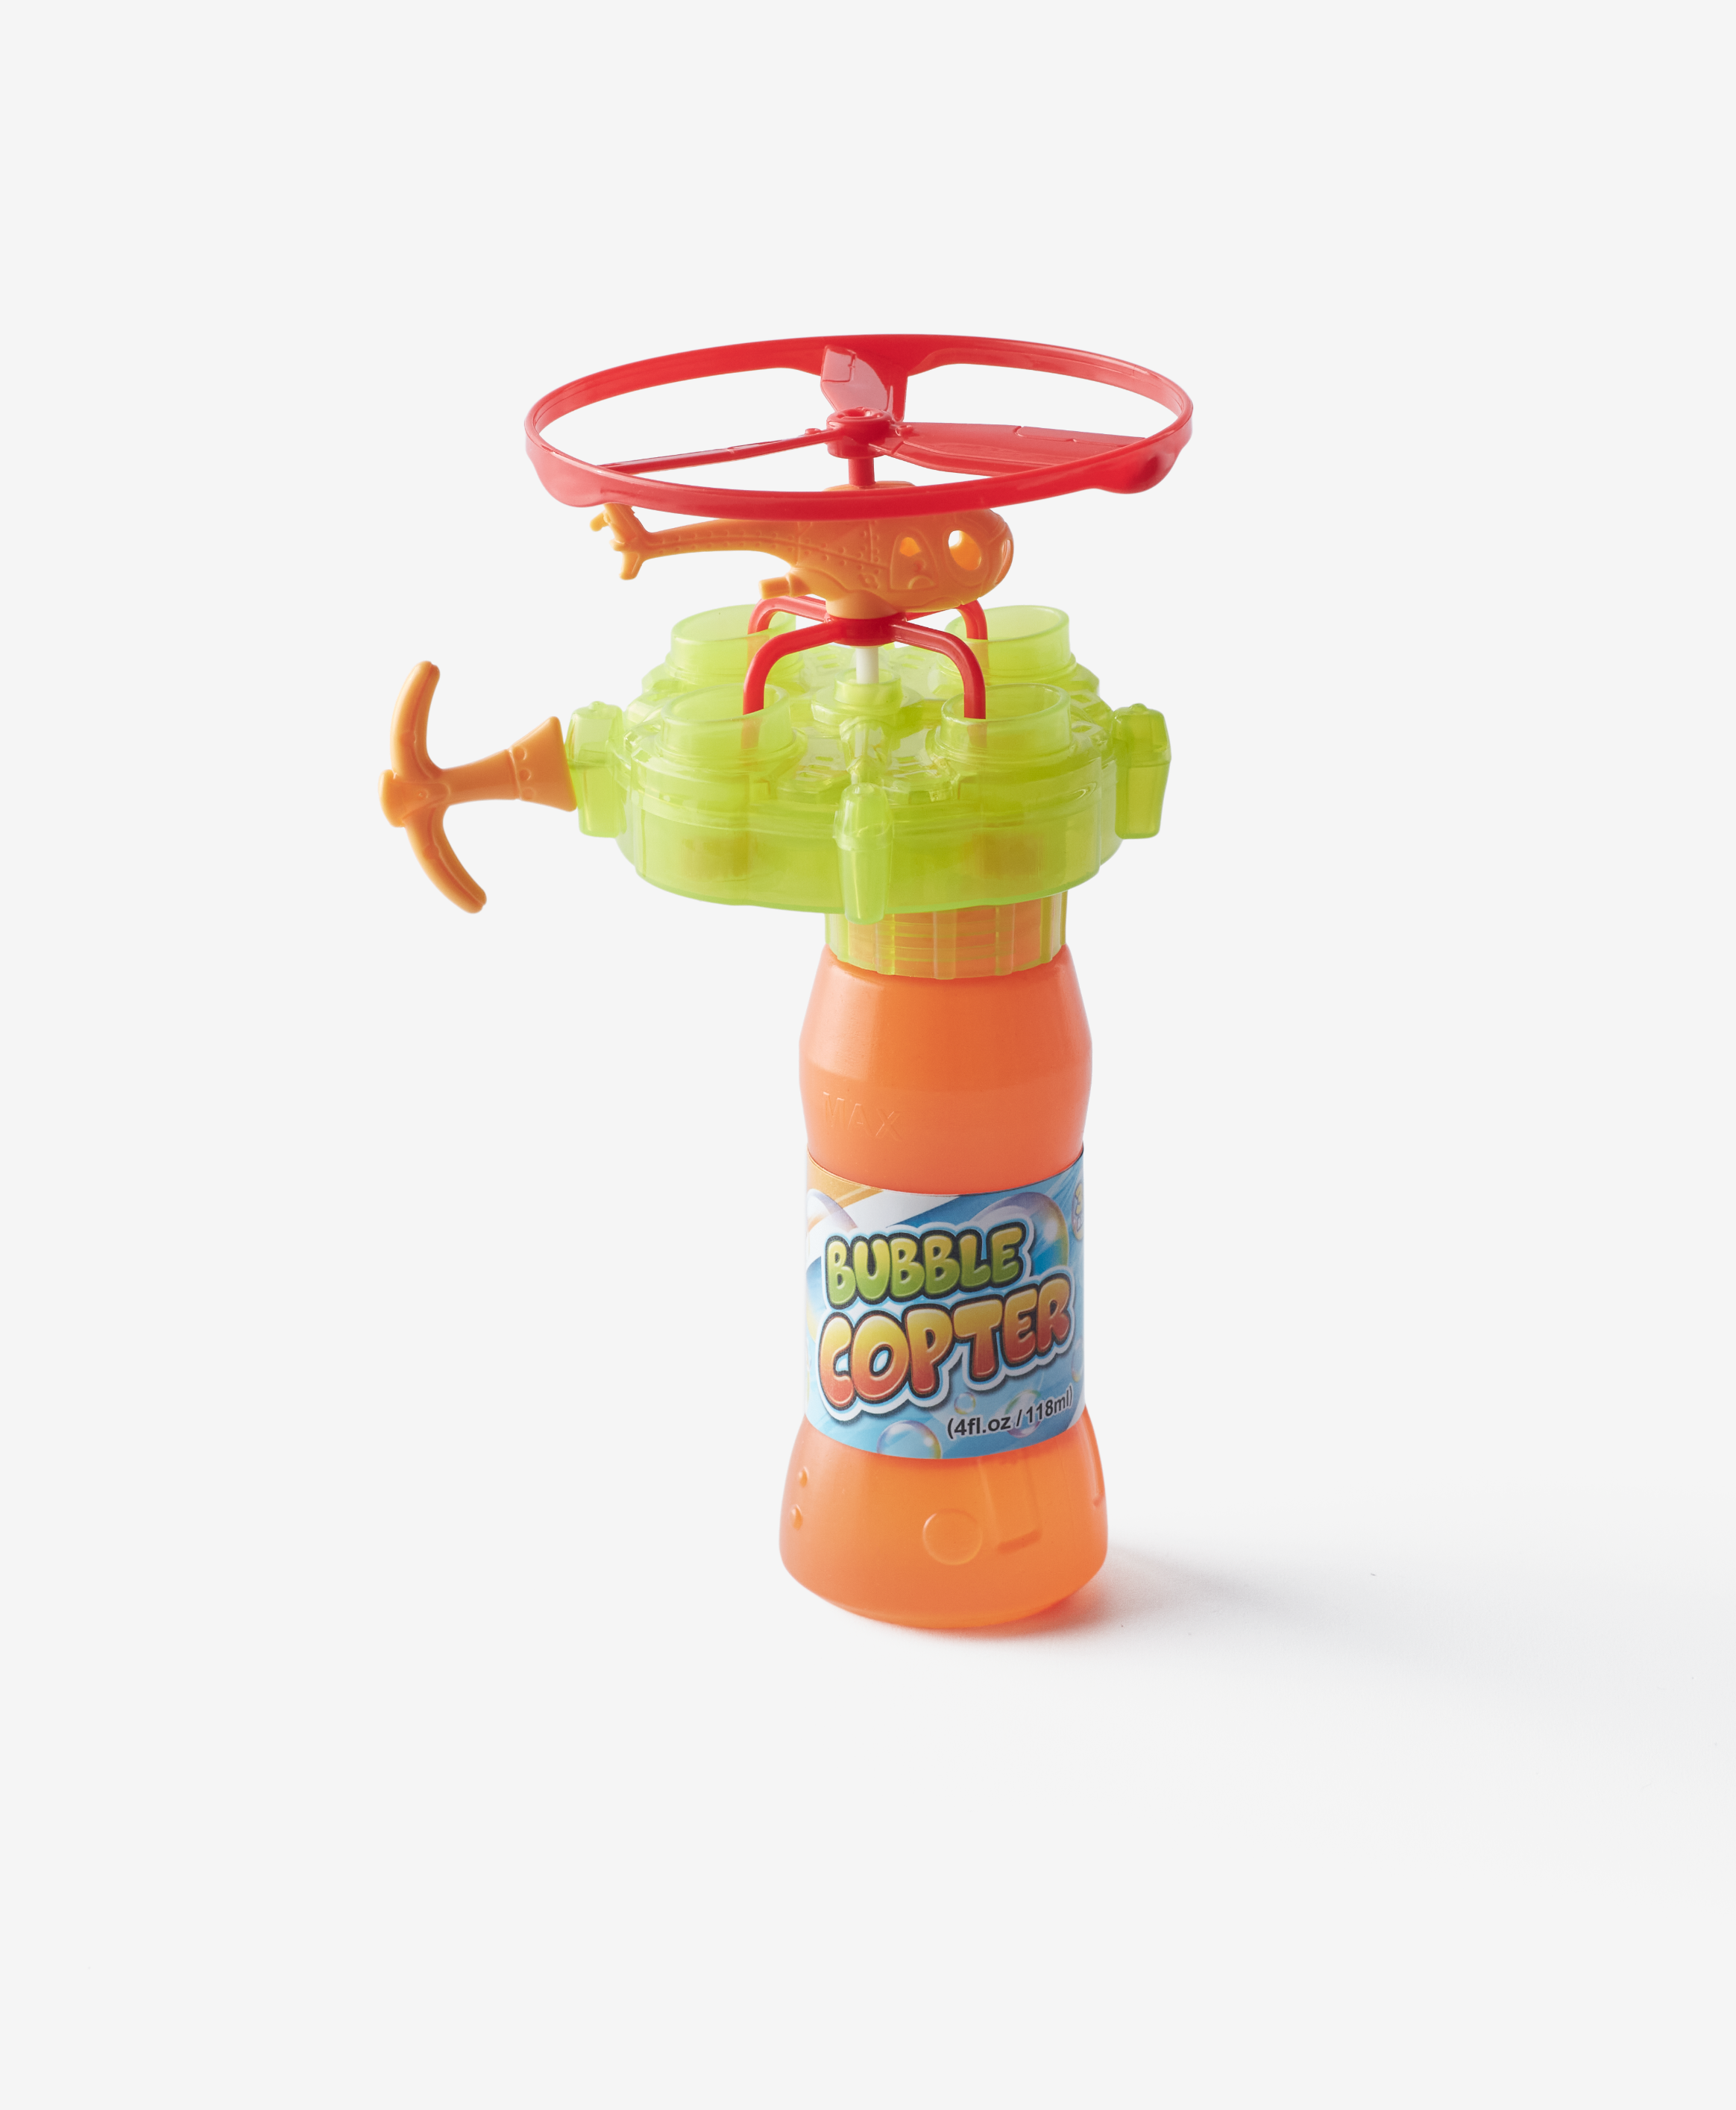 Seifenblasen-Hubschrauber, orange, grün, 110 ml Flüssigkeit